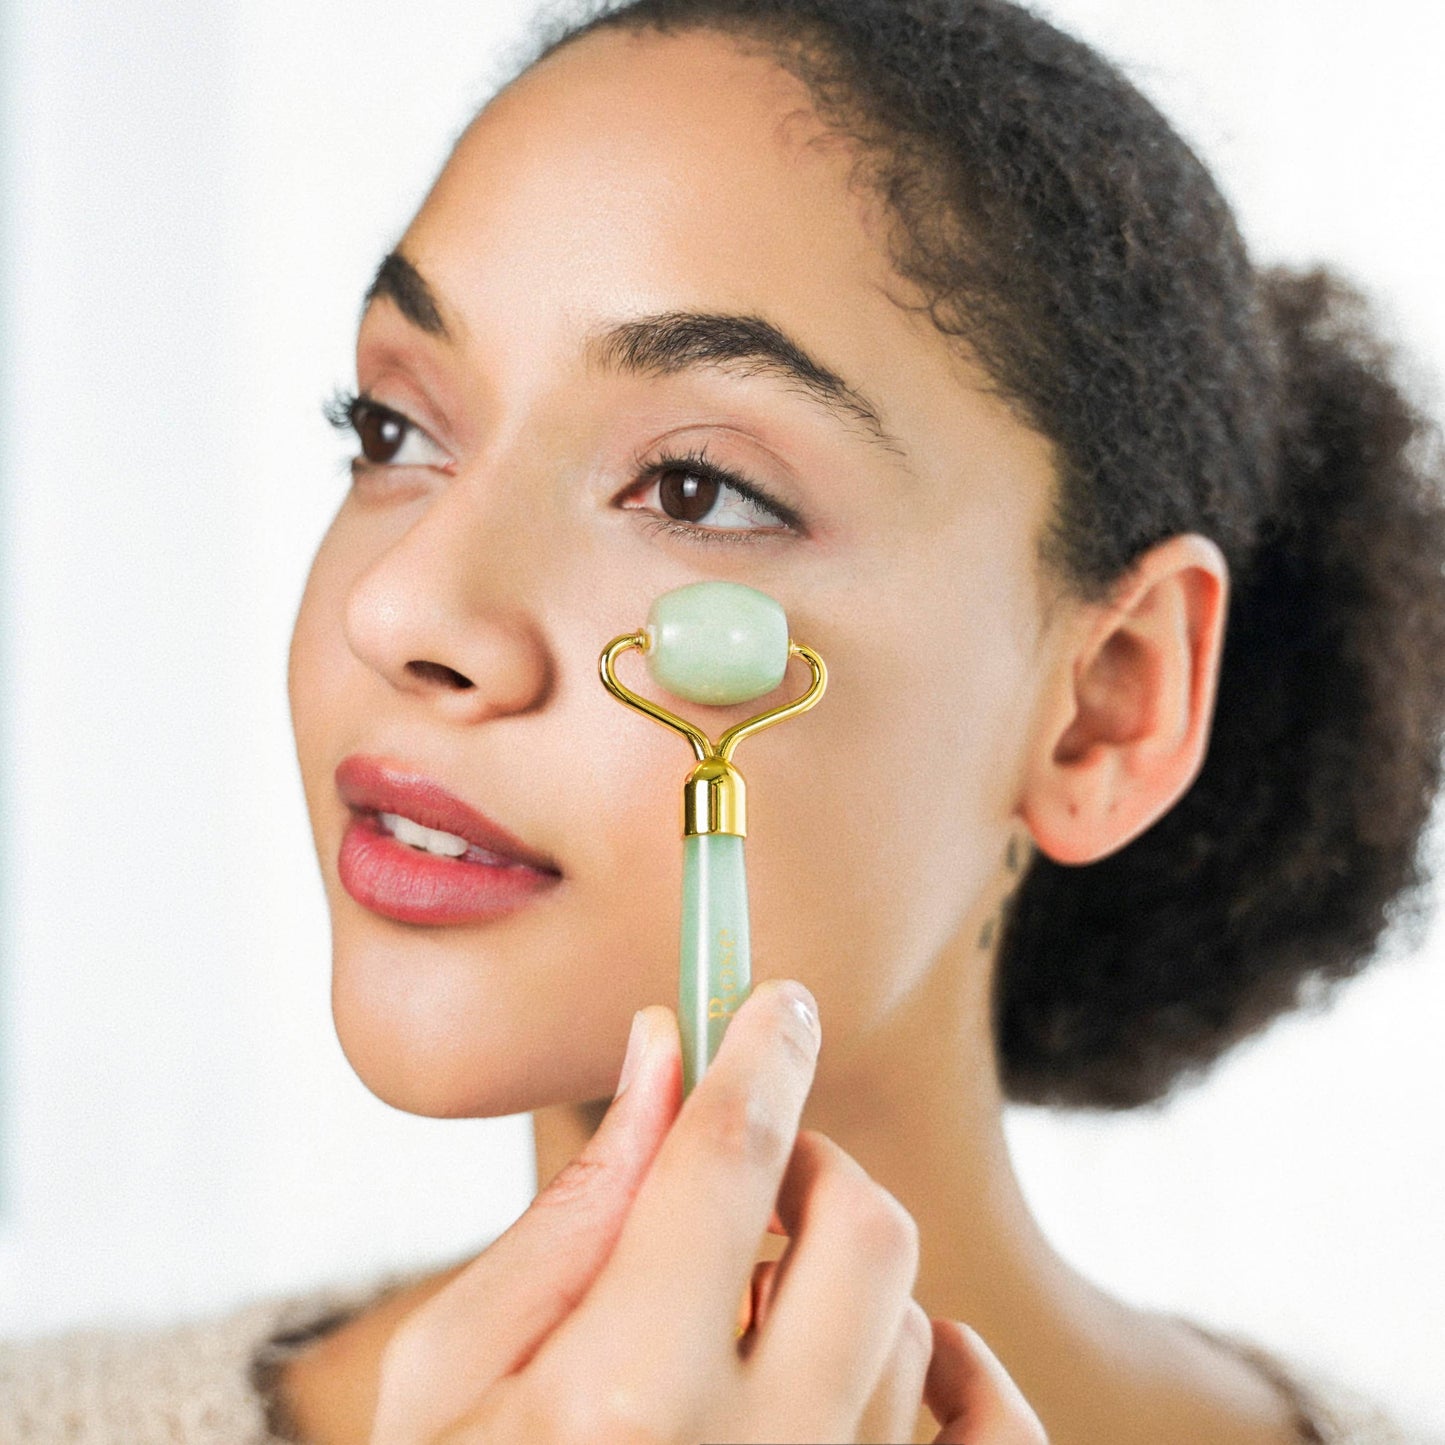 Crystal Roller Facial Massage Tool - Amethyst, Jade or Rose Quartz